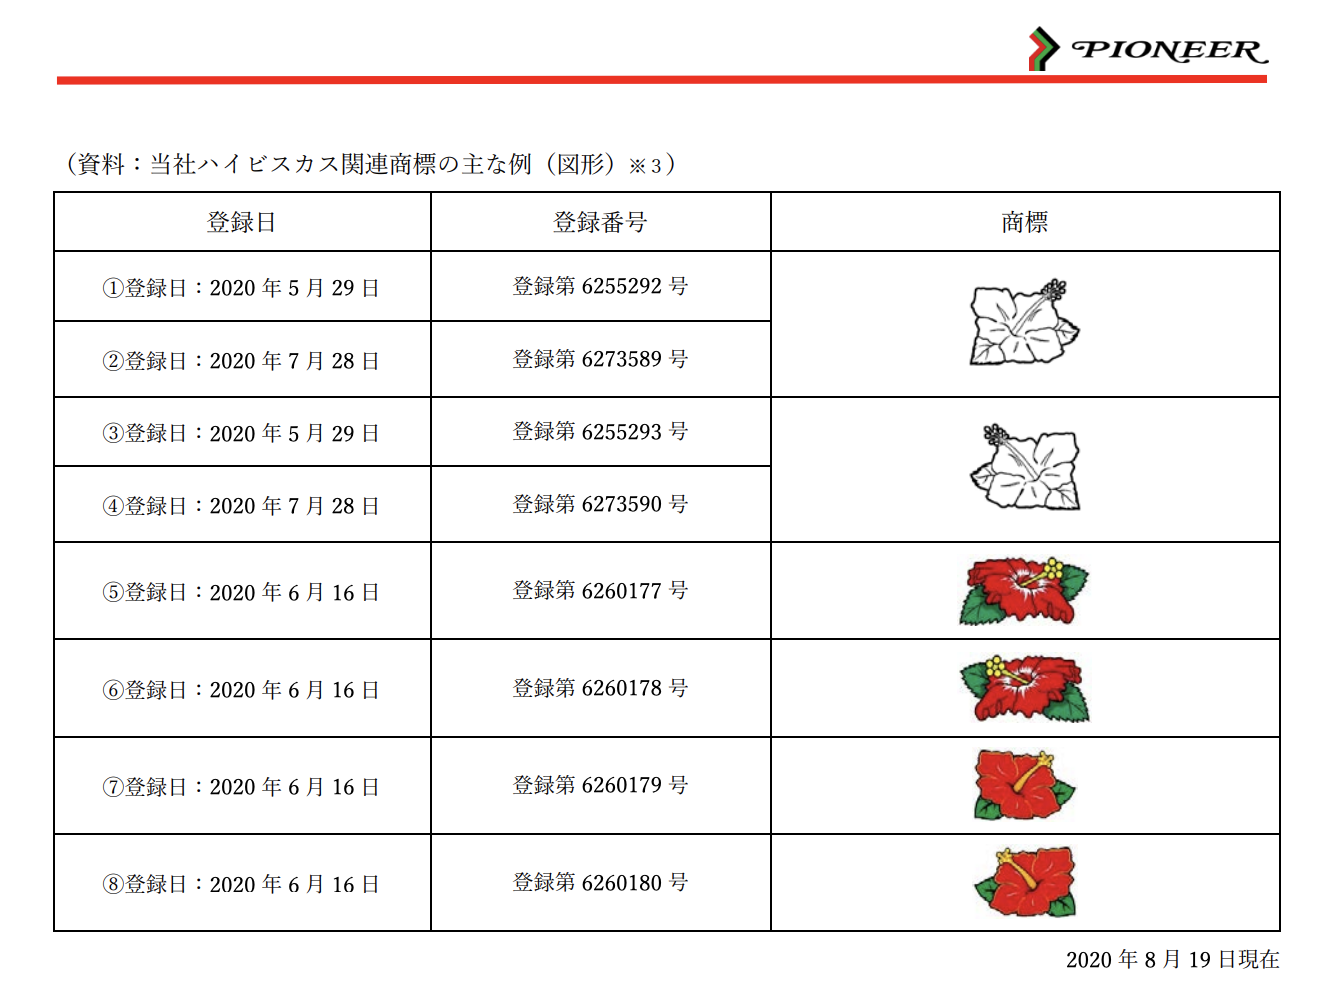 ハナハナシリーズのハイビスカスが商標登録 今後のハイビスカスモチーフには要留意 P Media Japan